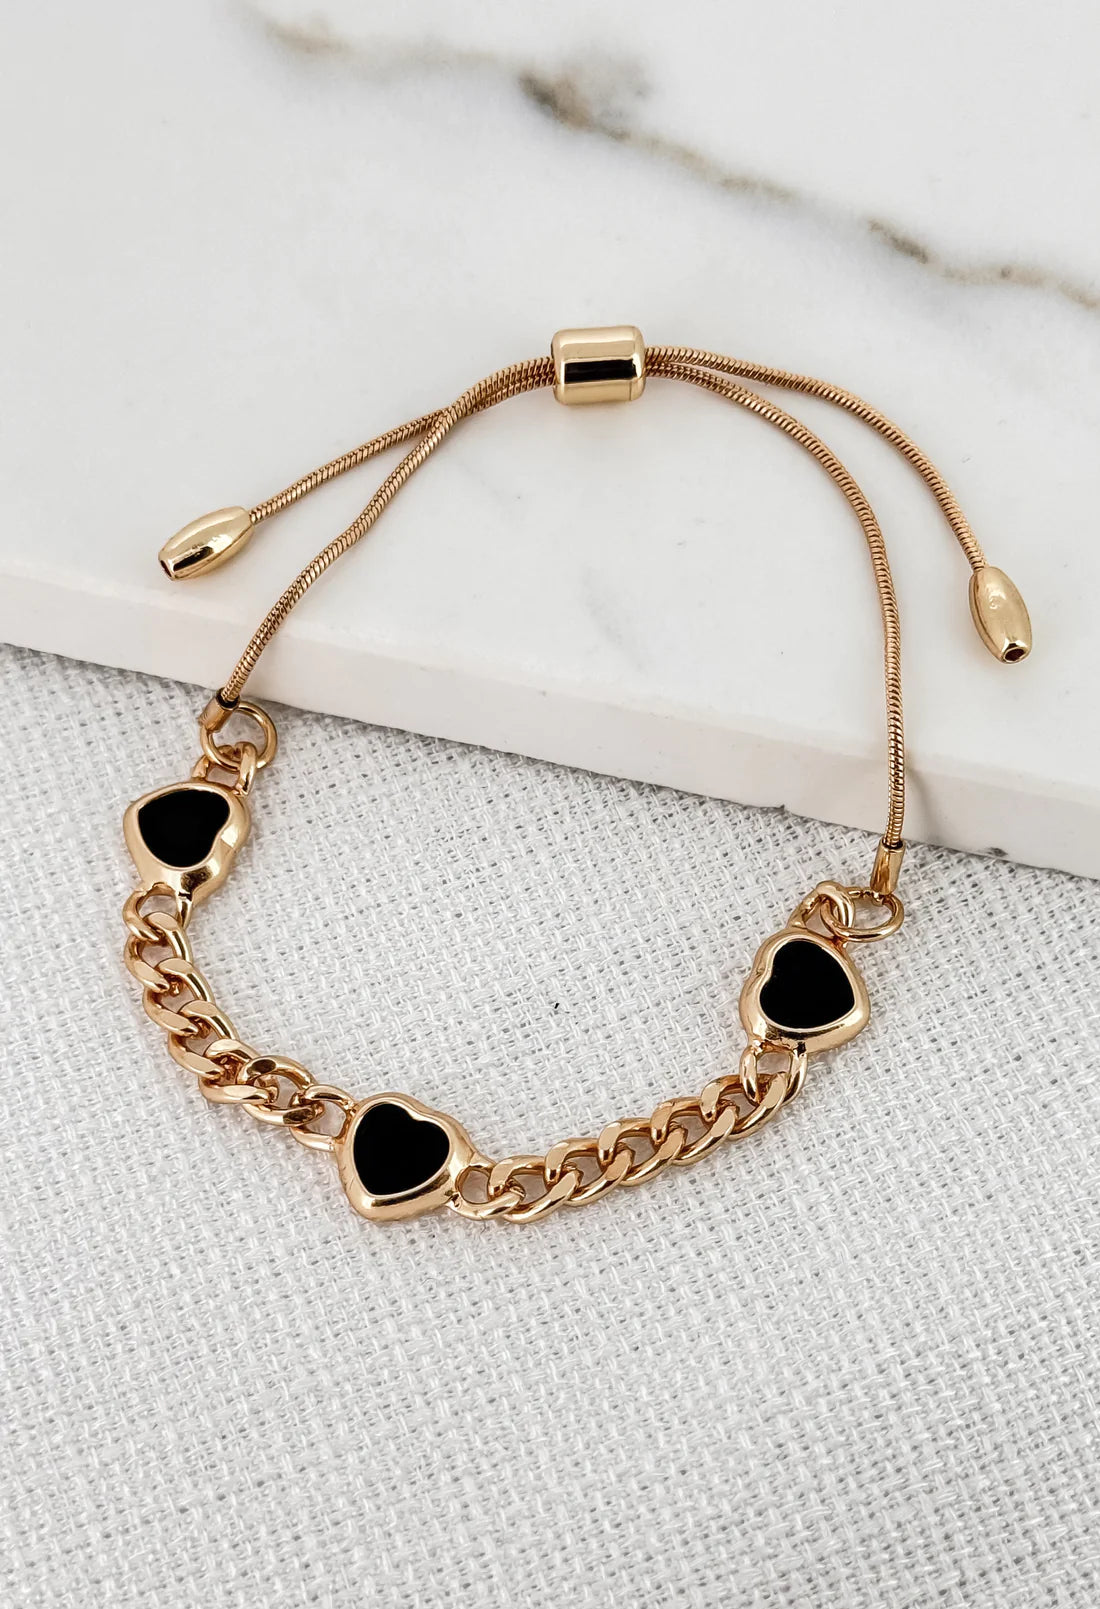 Envy Gold Heart Chain Bracelet